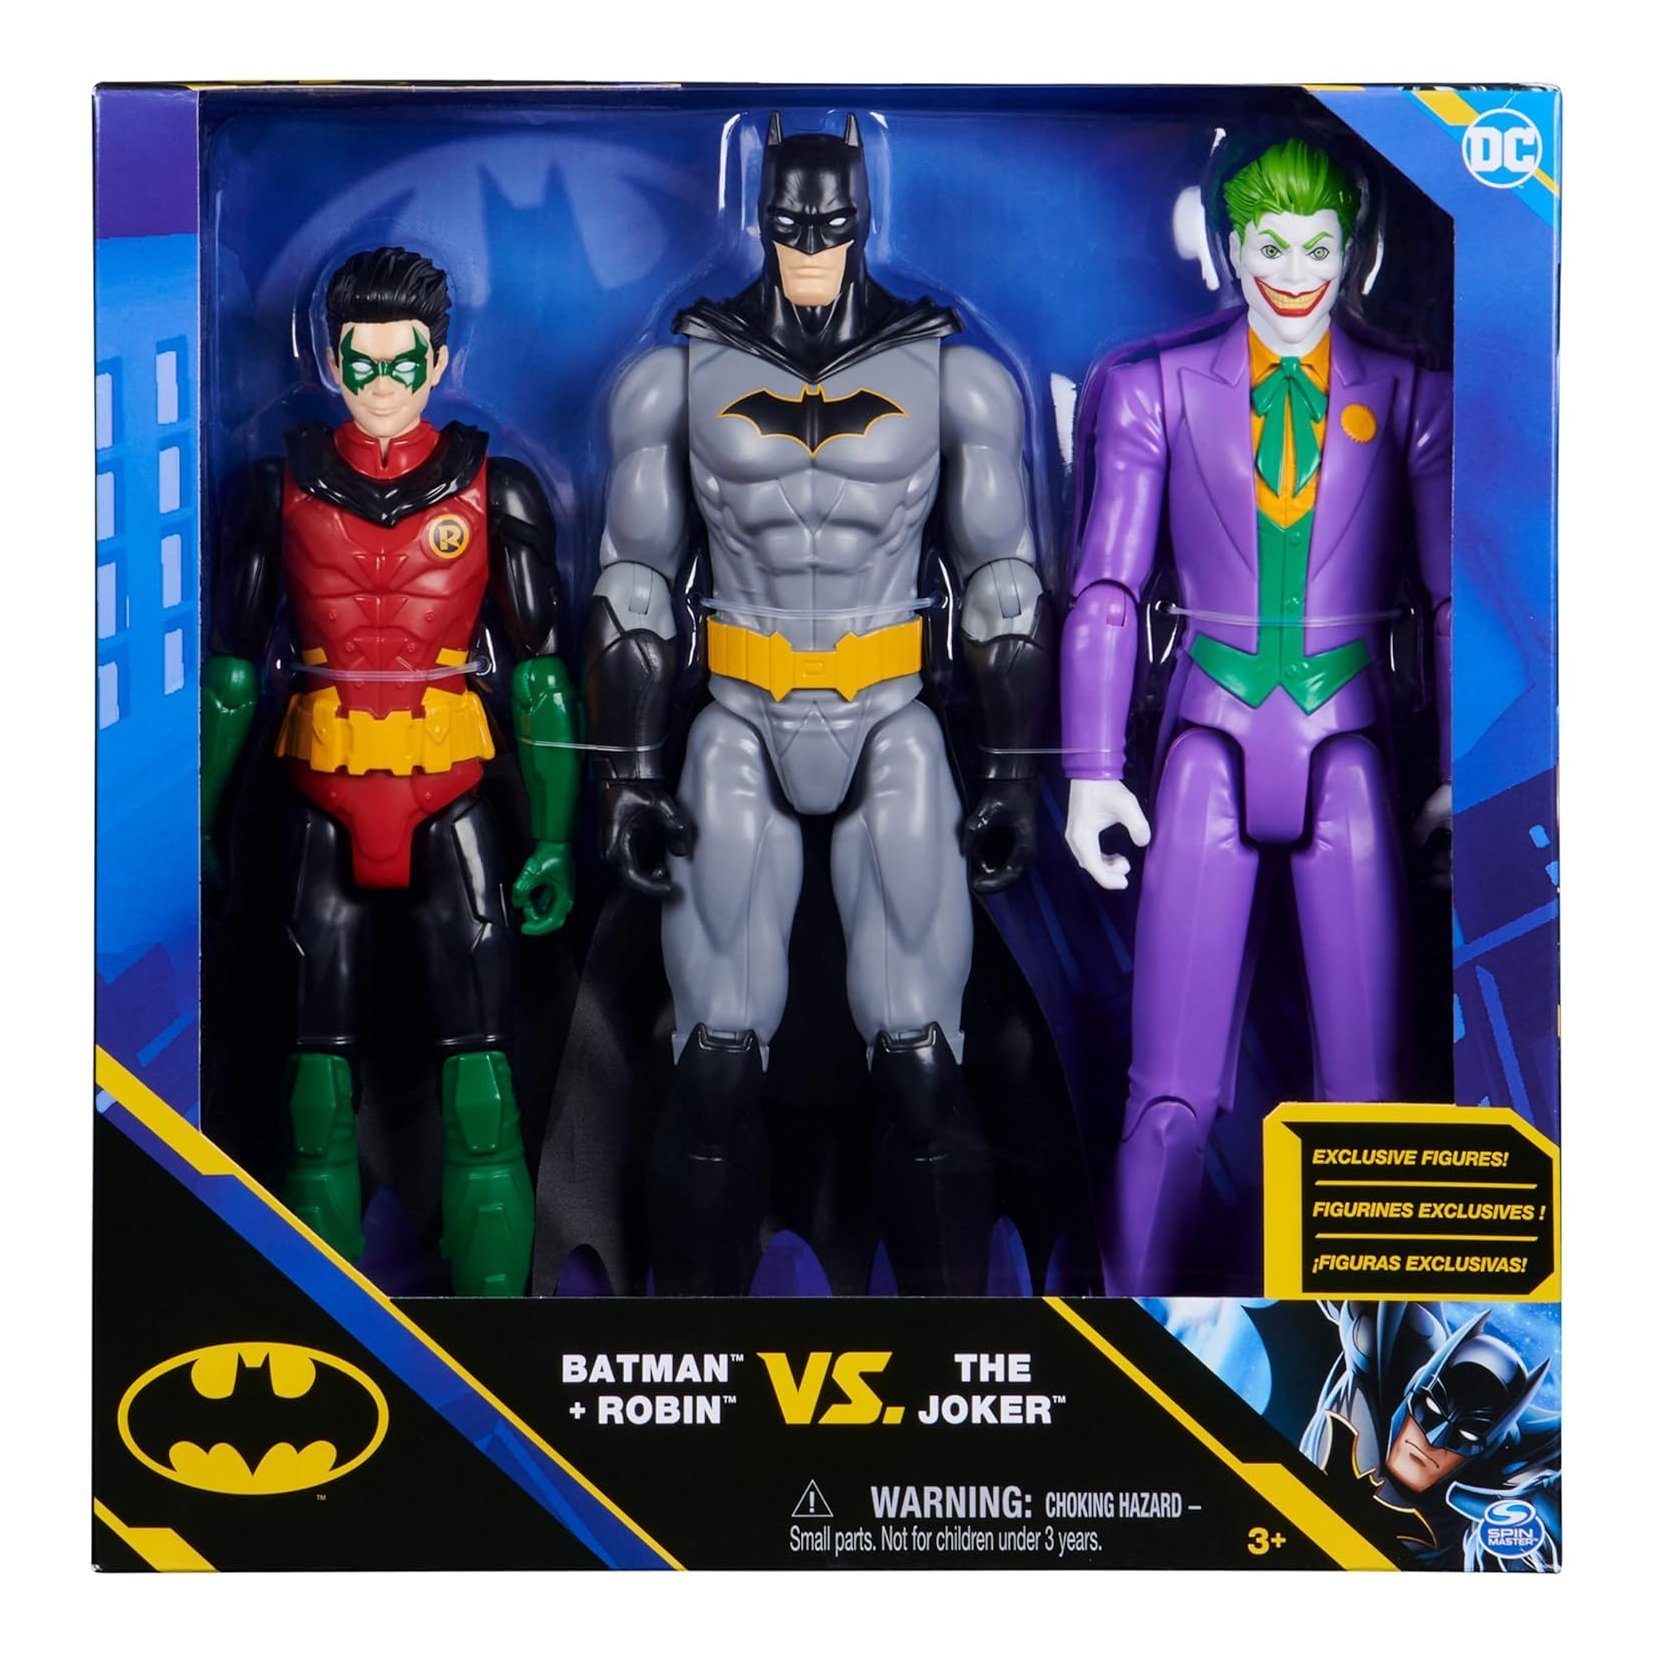 Metamorph Dekofigur Batman und Robin vs Joker Actionfiguren Set, 30 cm große Actionfiguren in authentischem DC Comic-Design